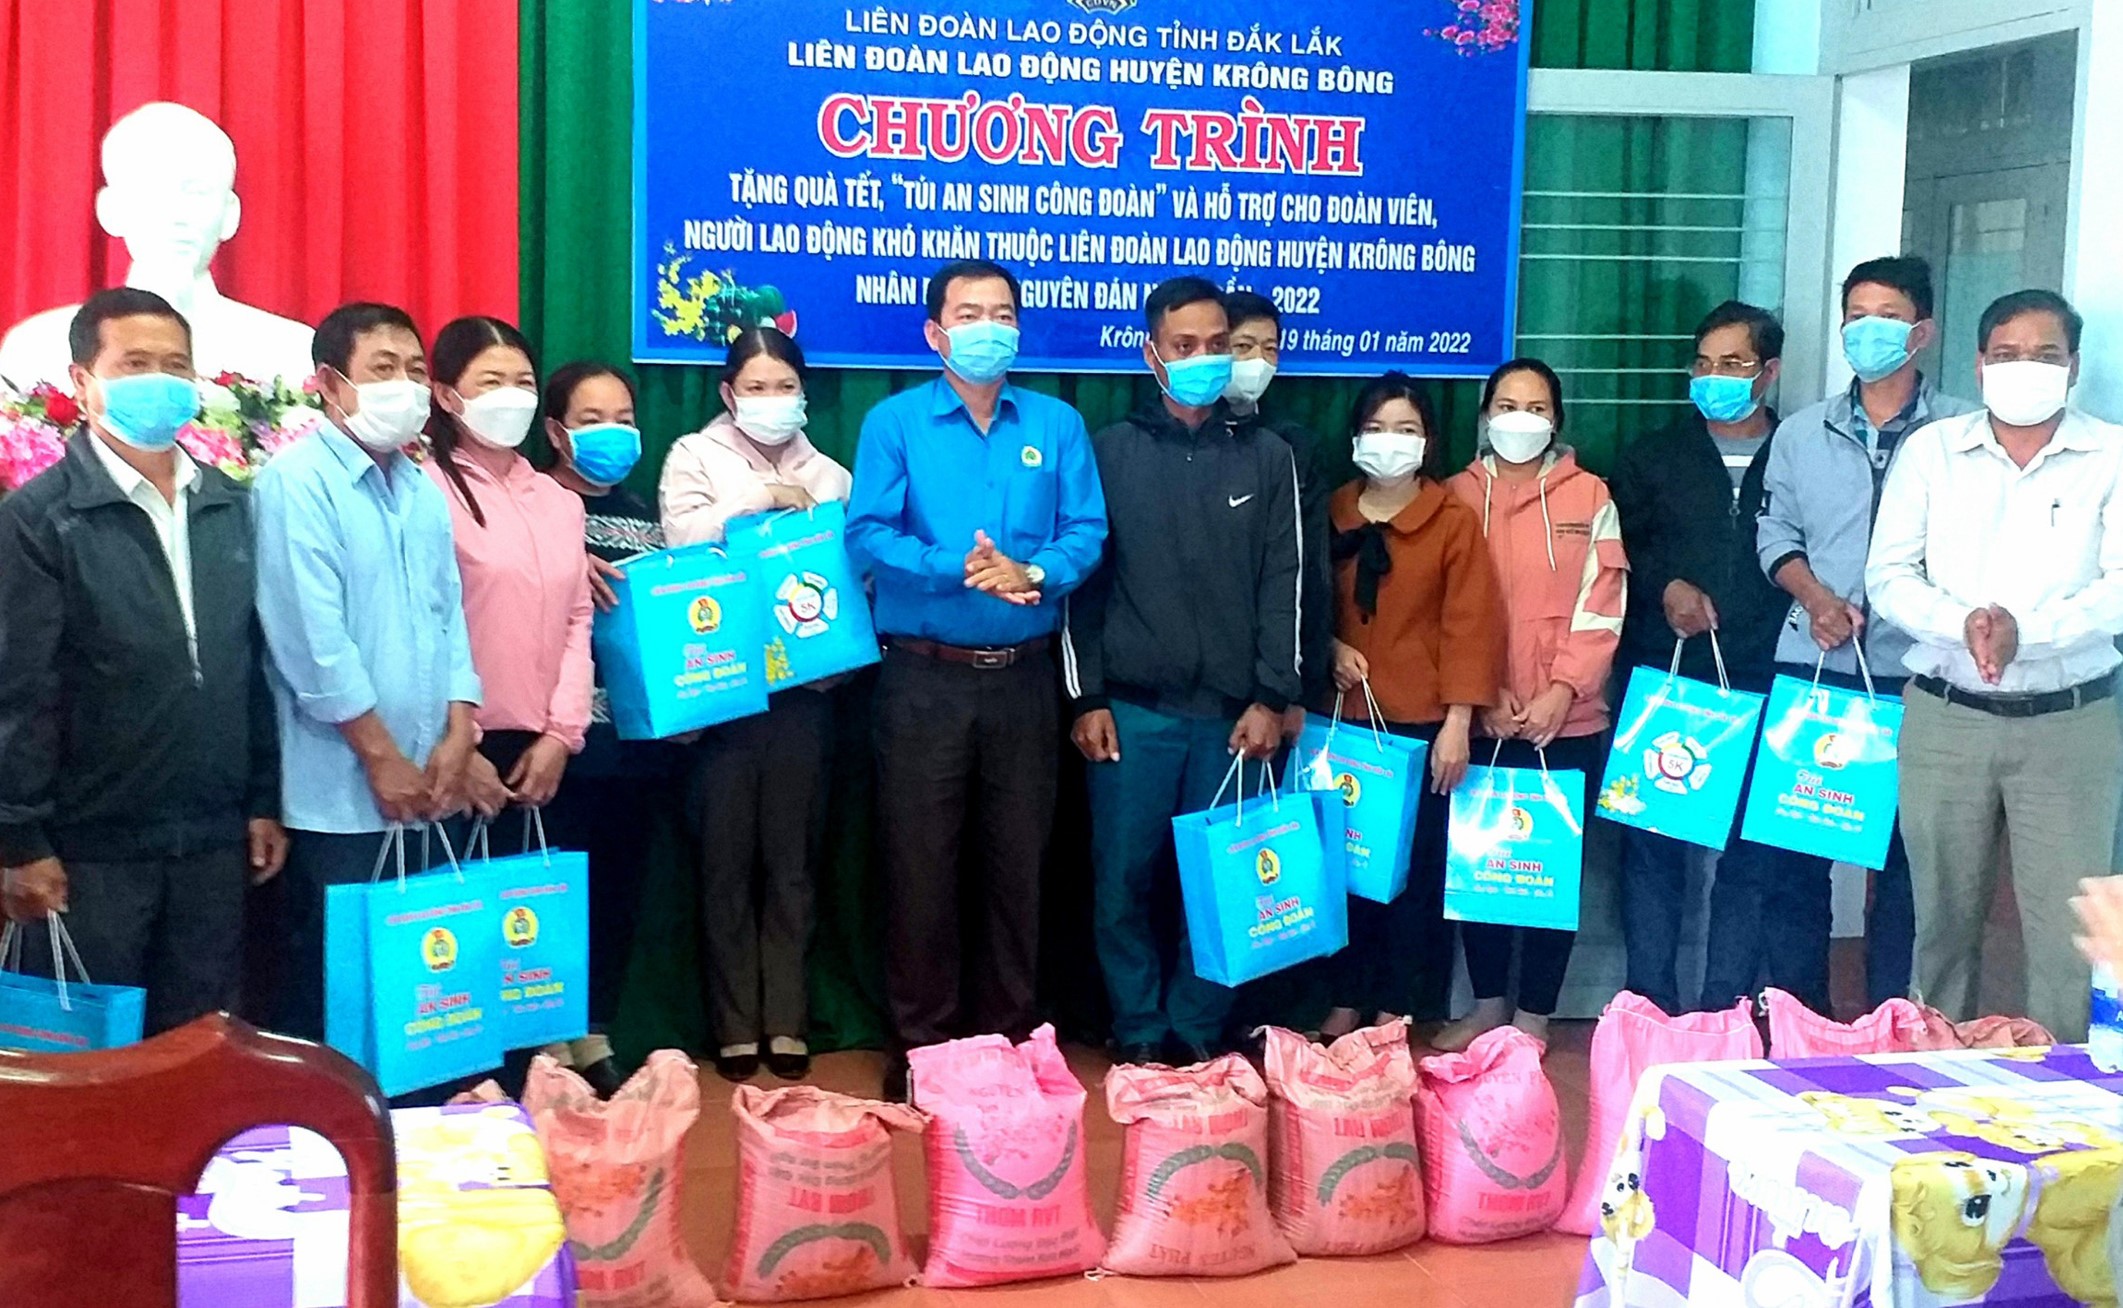 Liên đoàn lao động huyện Krông Bông tặng quà cho đoàn viên, người lao động khó khăn dịp Tết Nguyên đán Nhâm Dần 2022